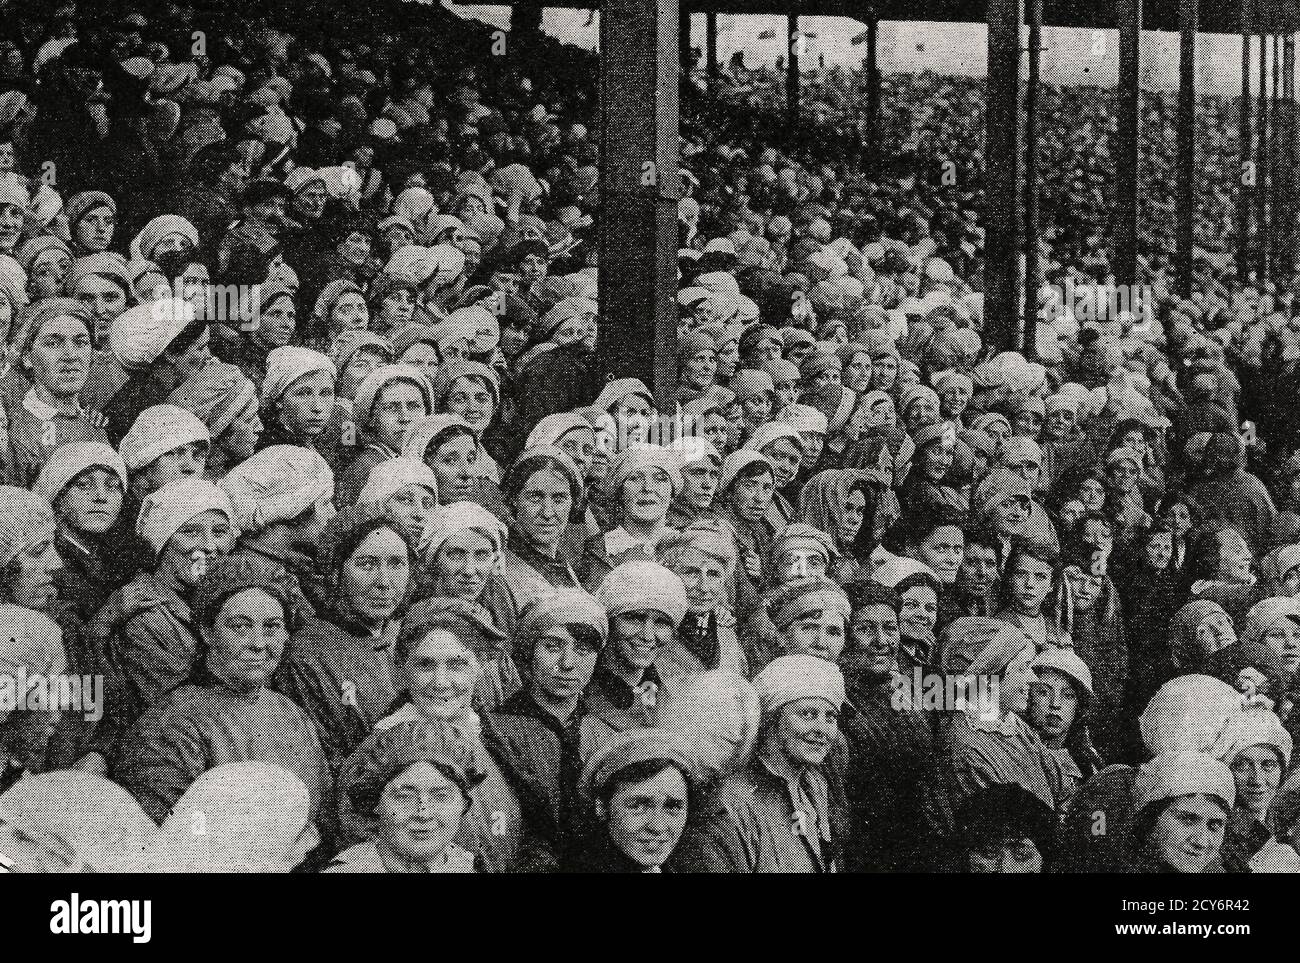 Munitionsarbeiterinnen in Europa nach dem Ersten Weltkrieg Stockfoto